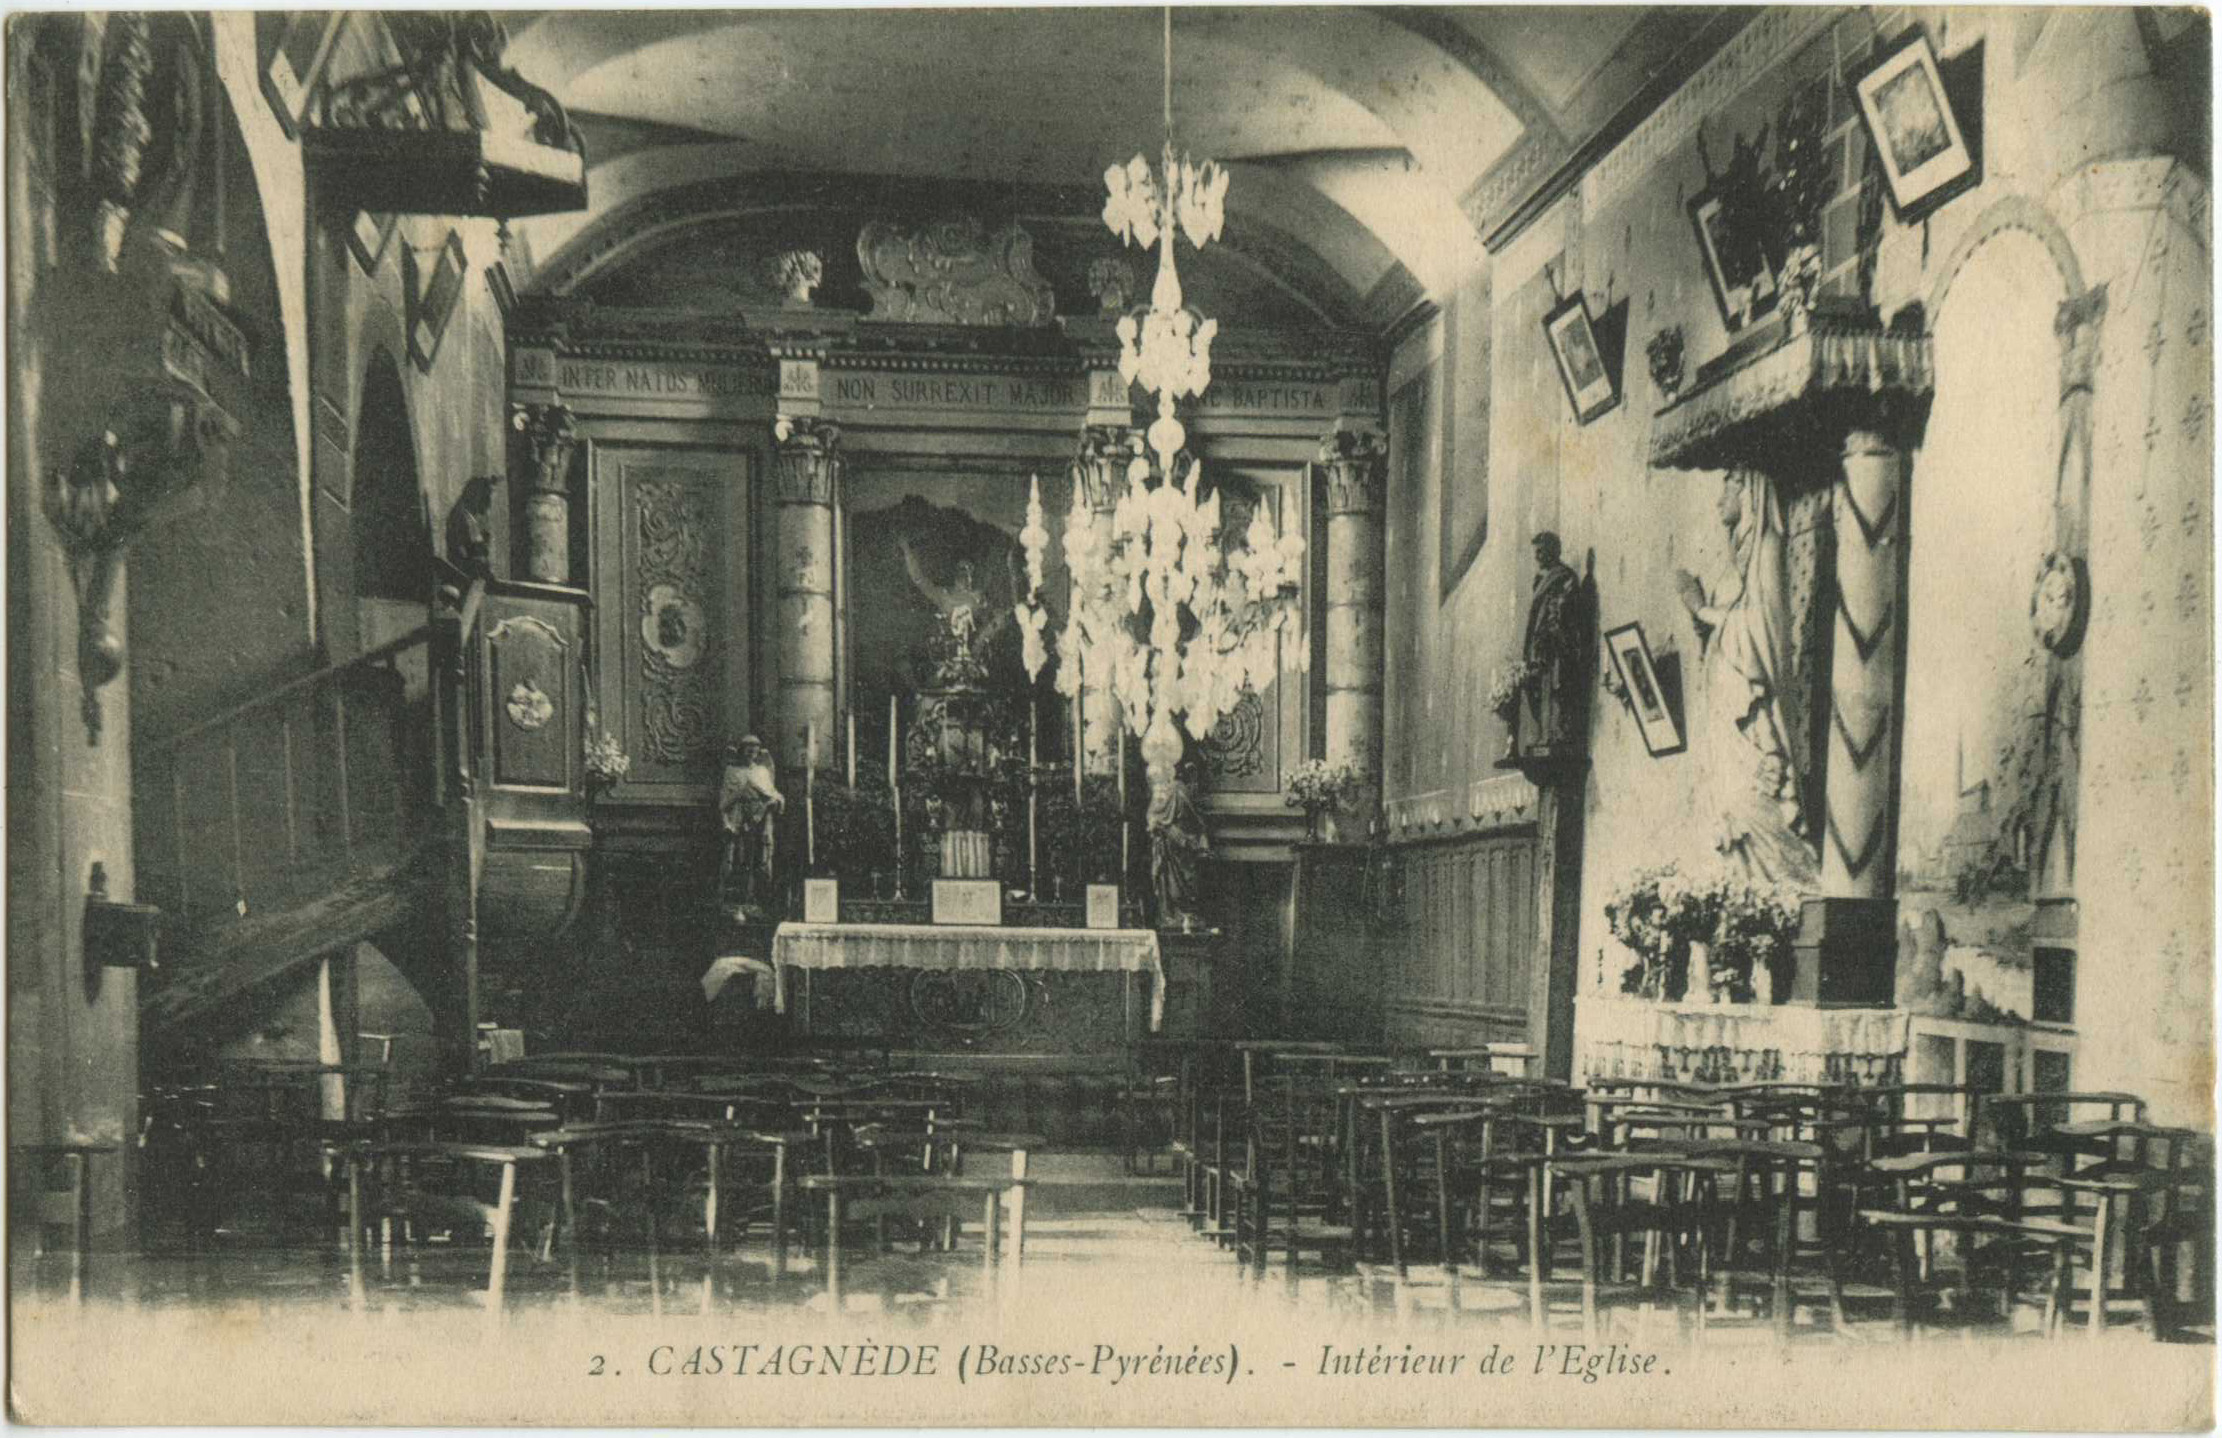 Castagnède - Intérieur de l'Eglise.